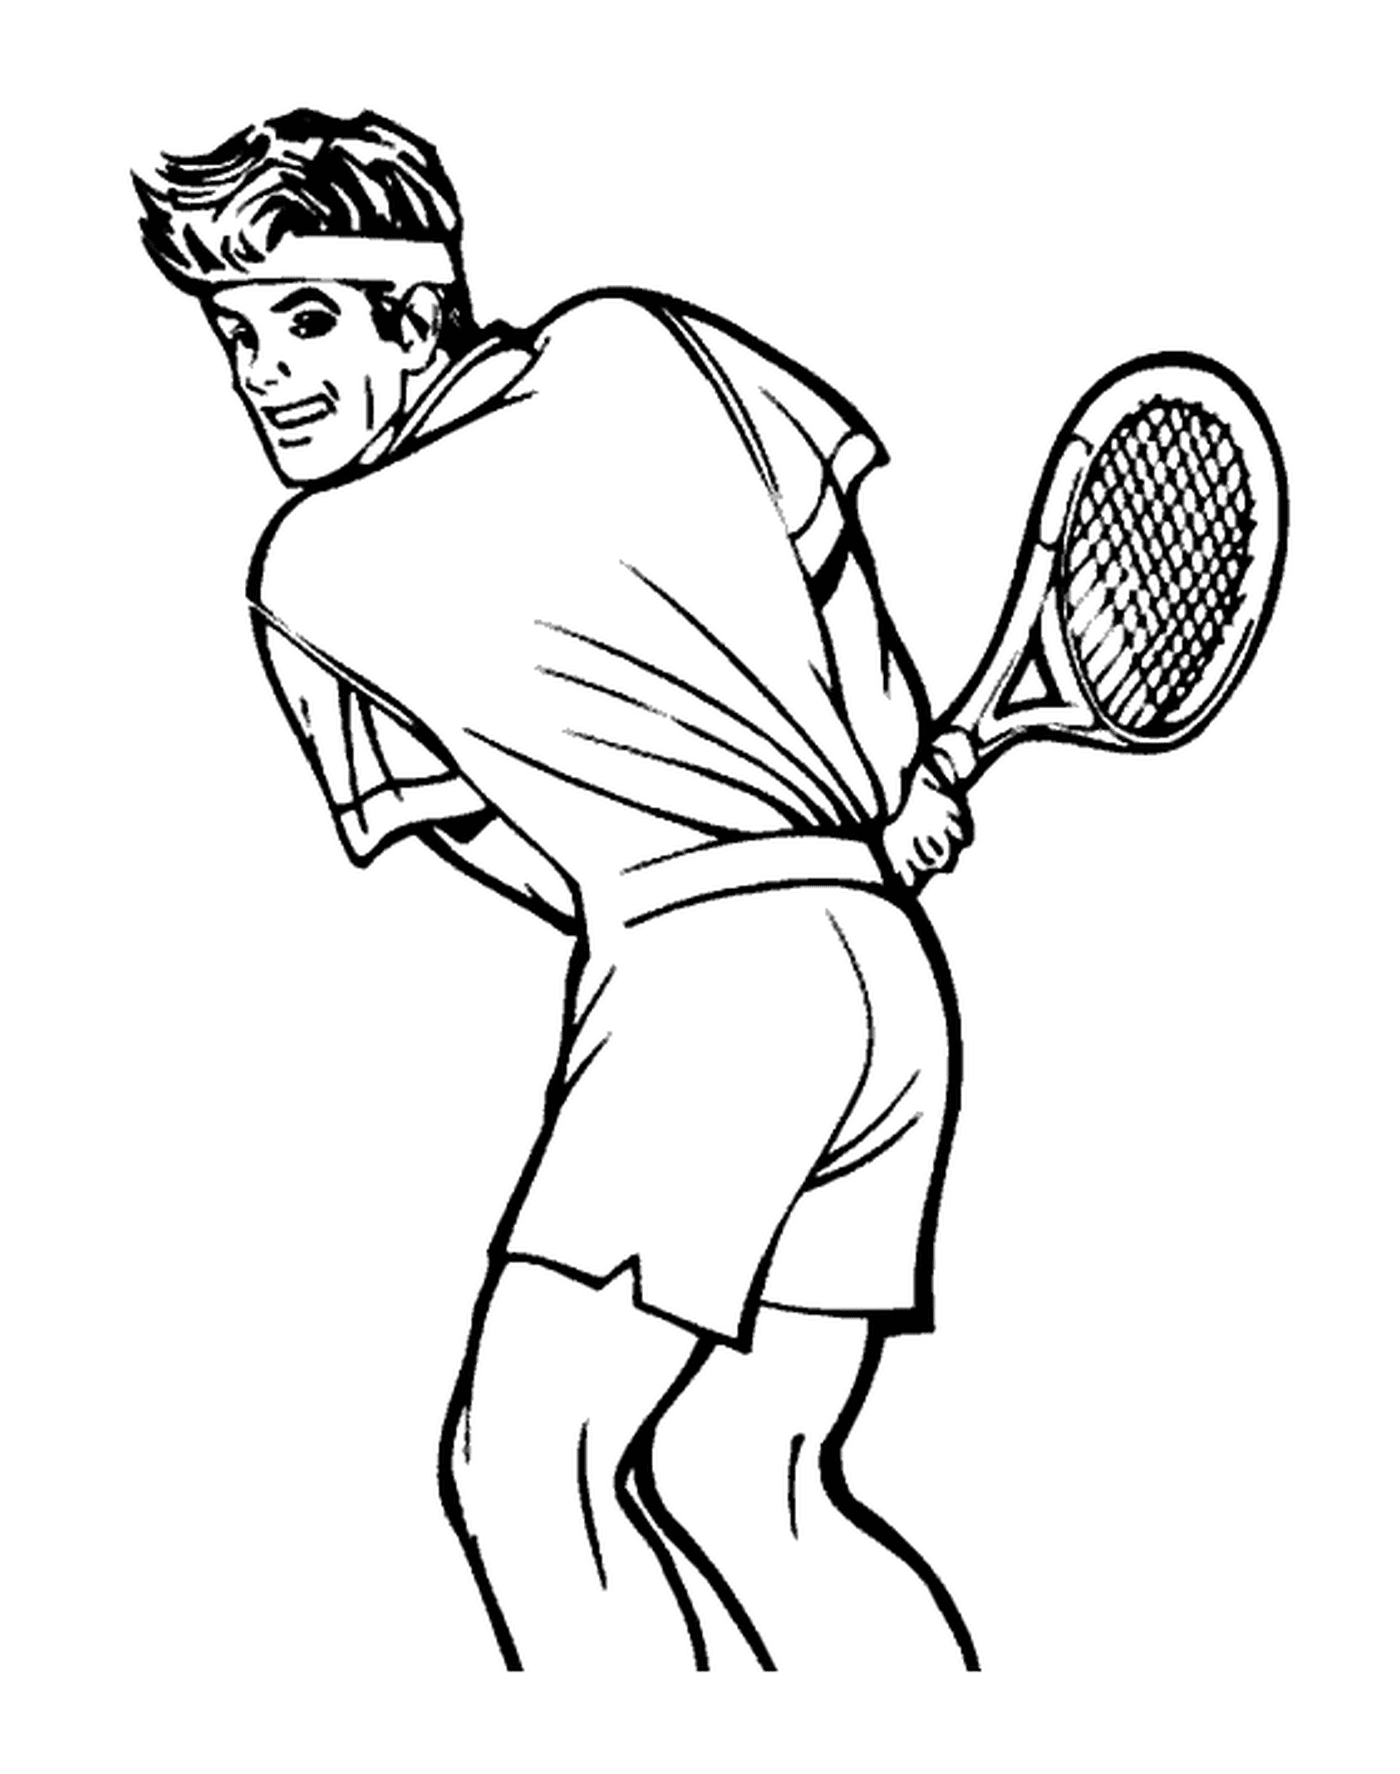  Теннисист в суде 